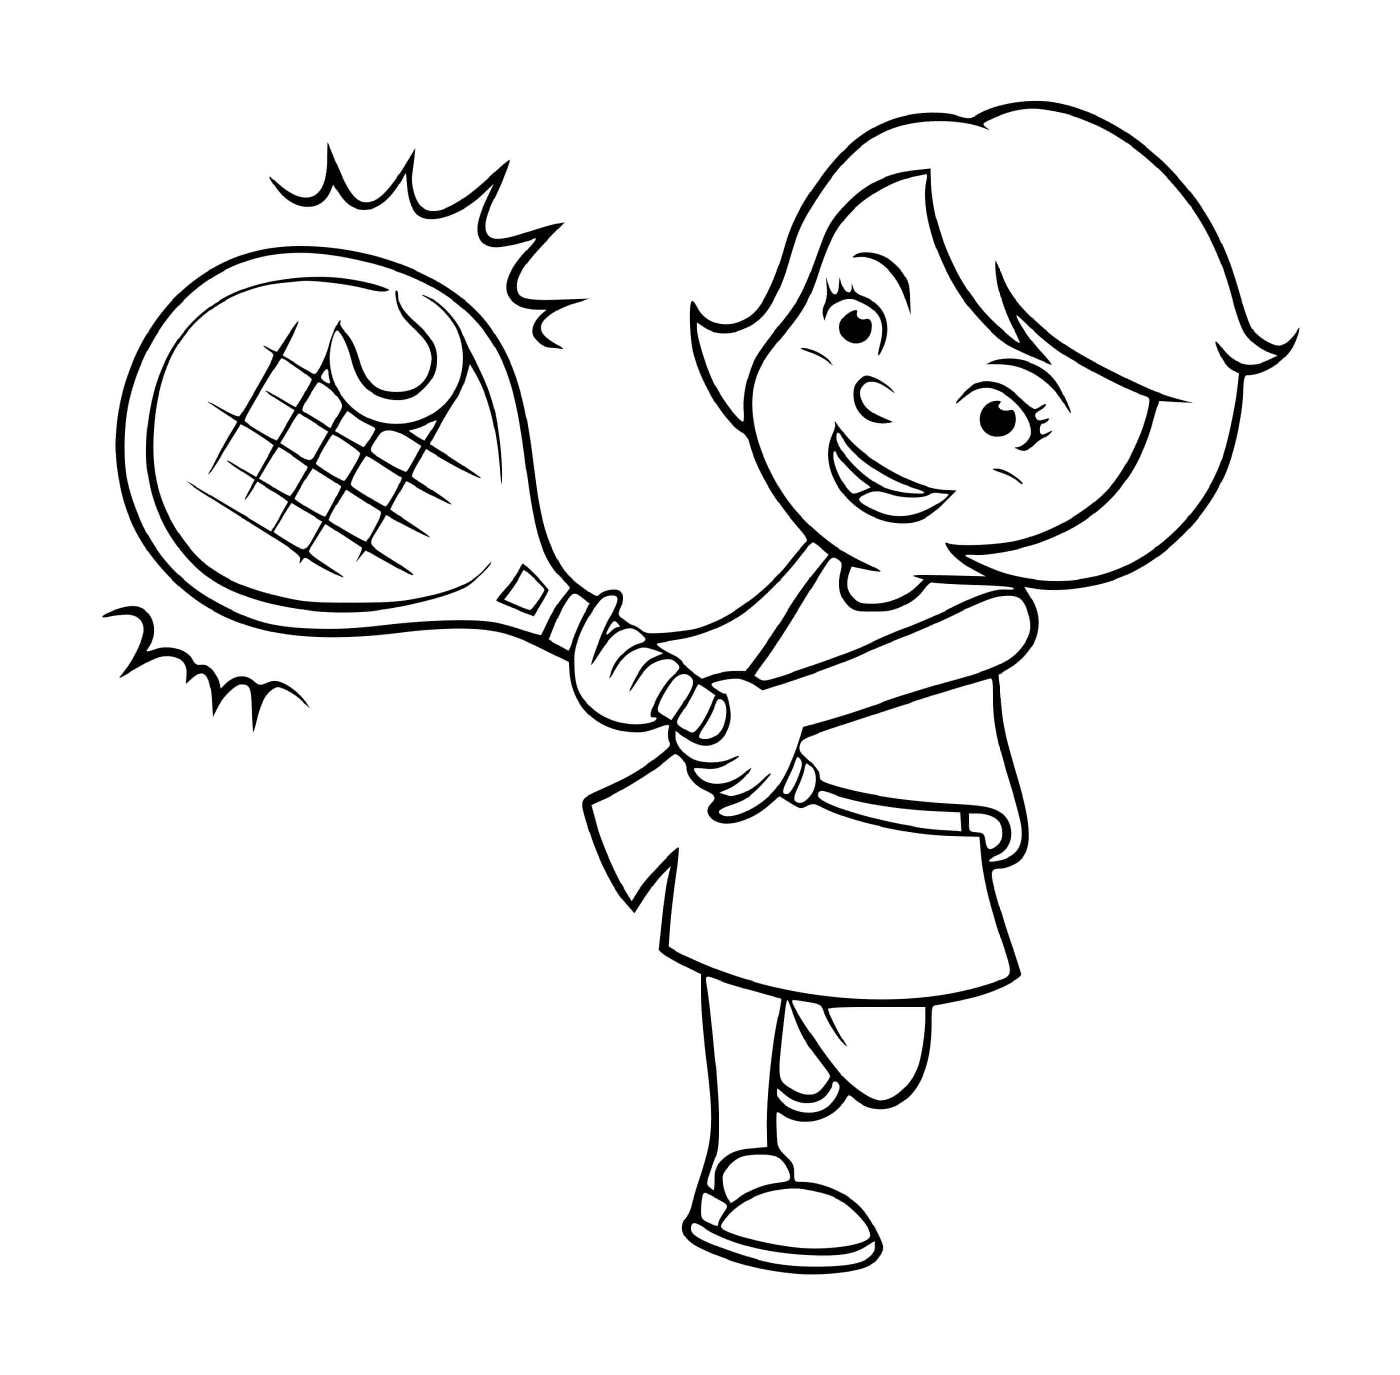  Uma menina joga tênis 